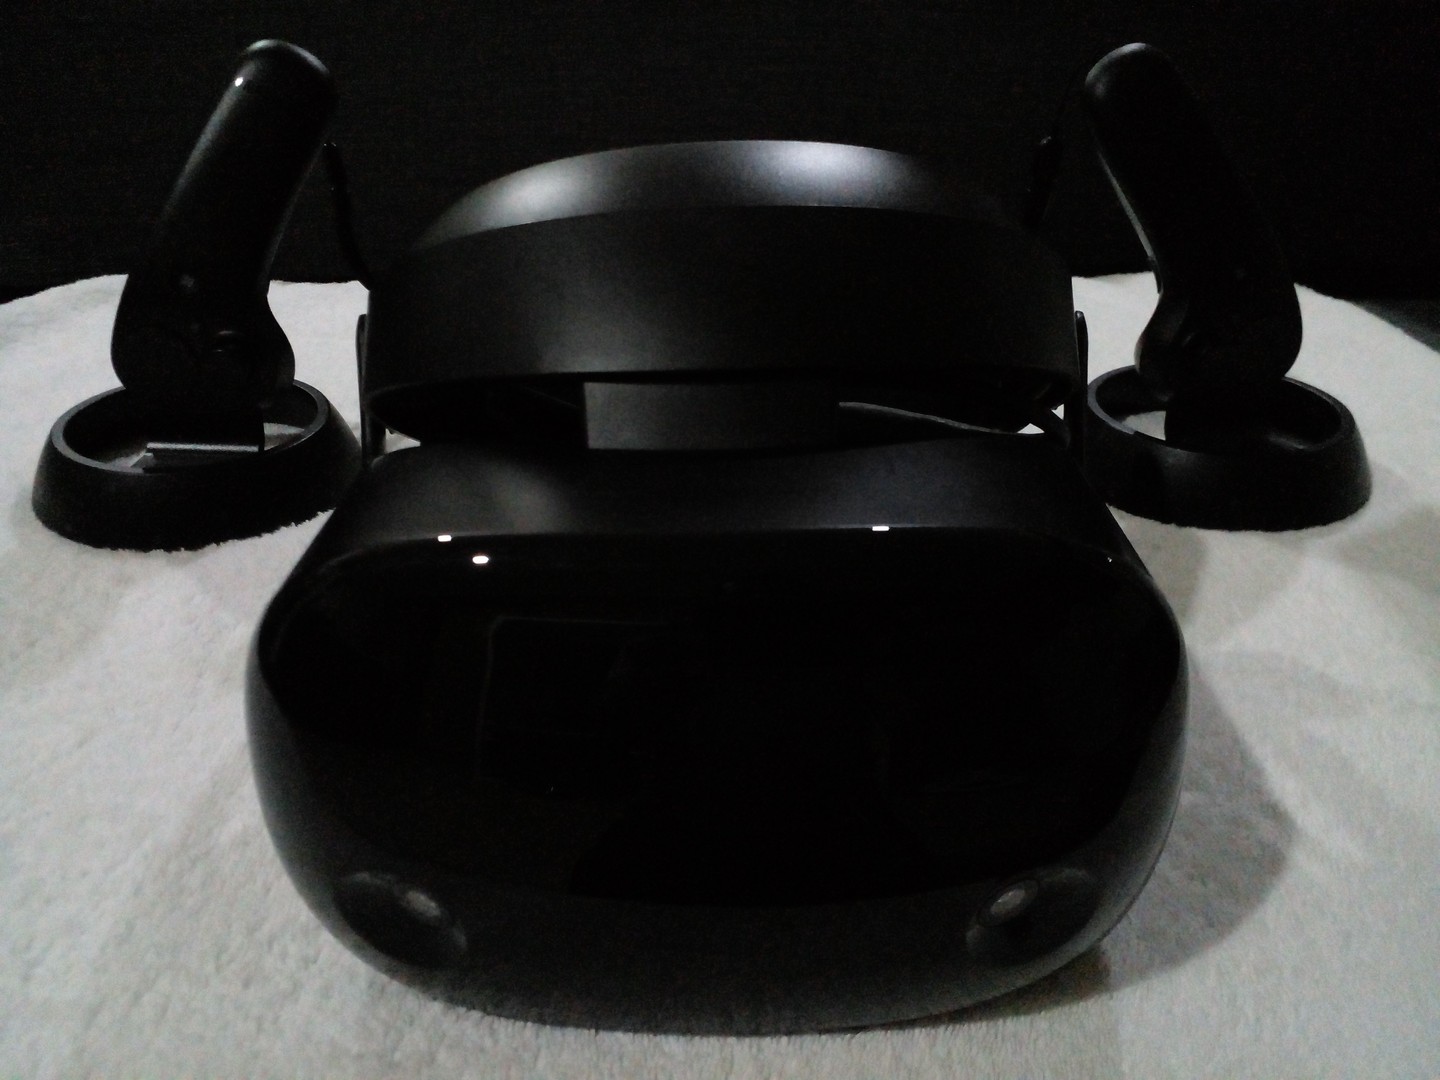 consolas y videojuegos - Casco De Realidad Virtual (VR HeadSet) Samsung odyssey+ 3